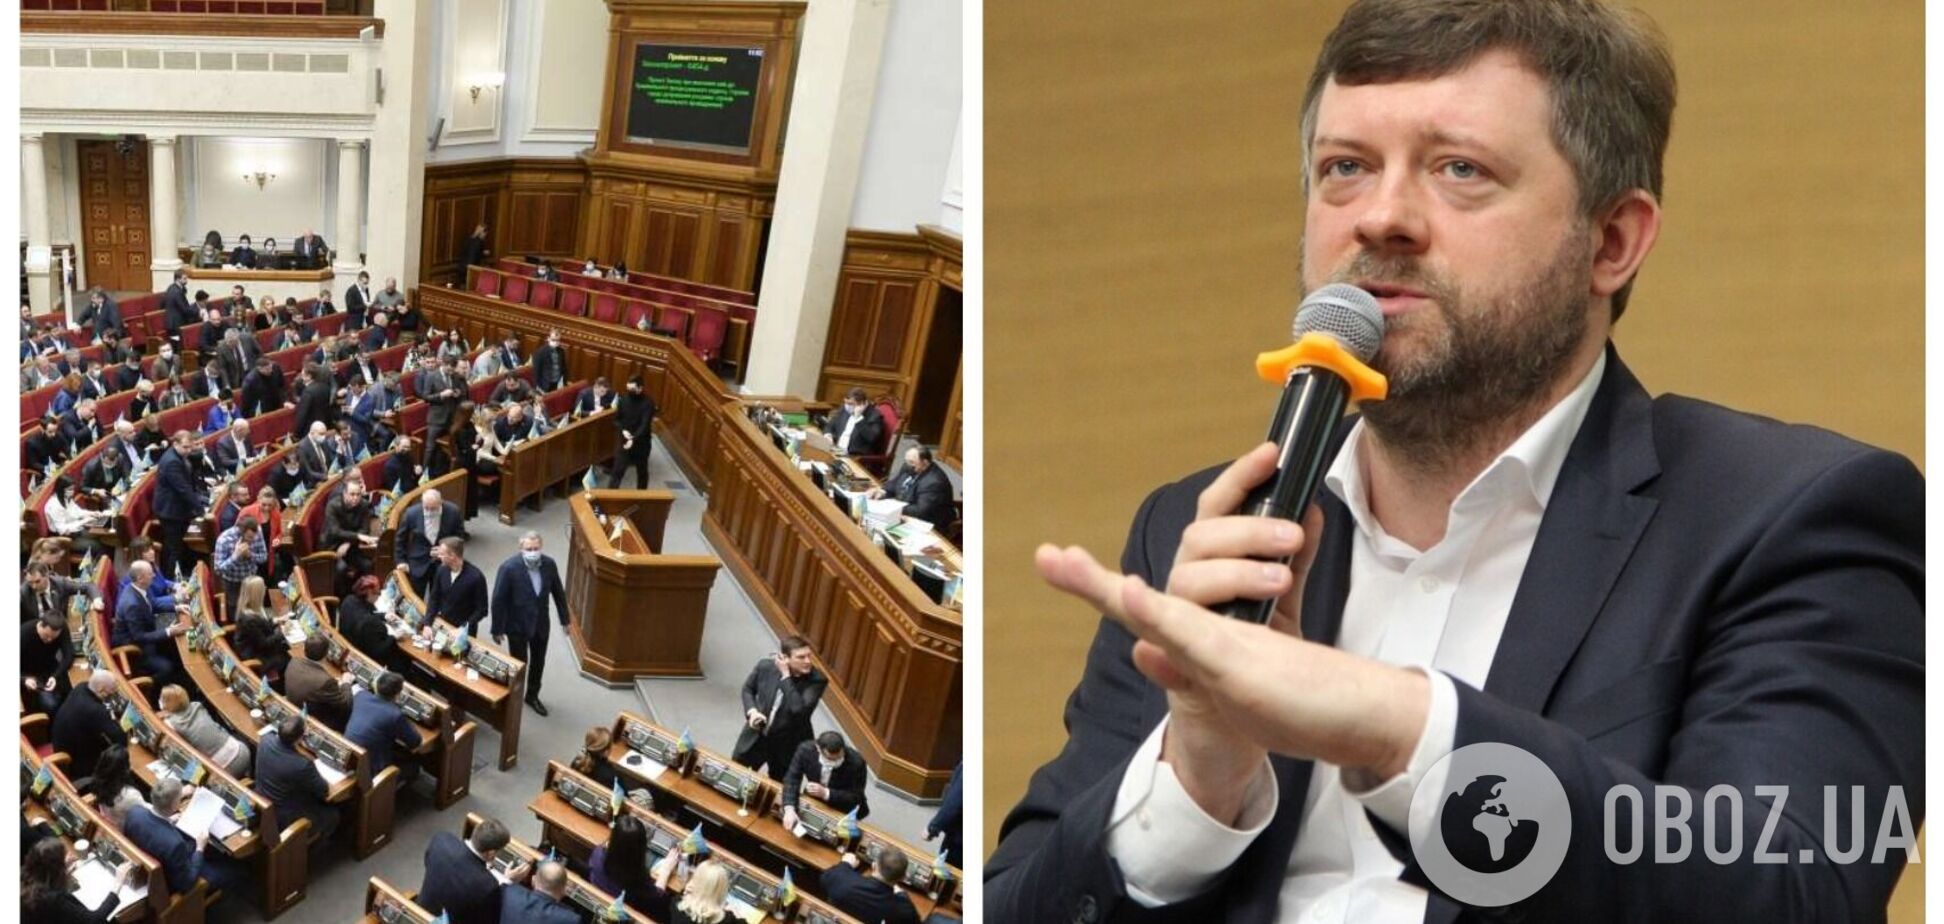 Депутати Ради працюють над законопроектом для відкликання місцевих депутатів із заборонених партій – Корнієнко